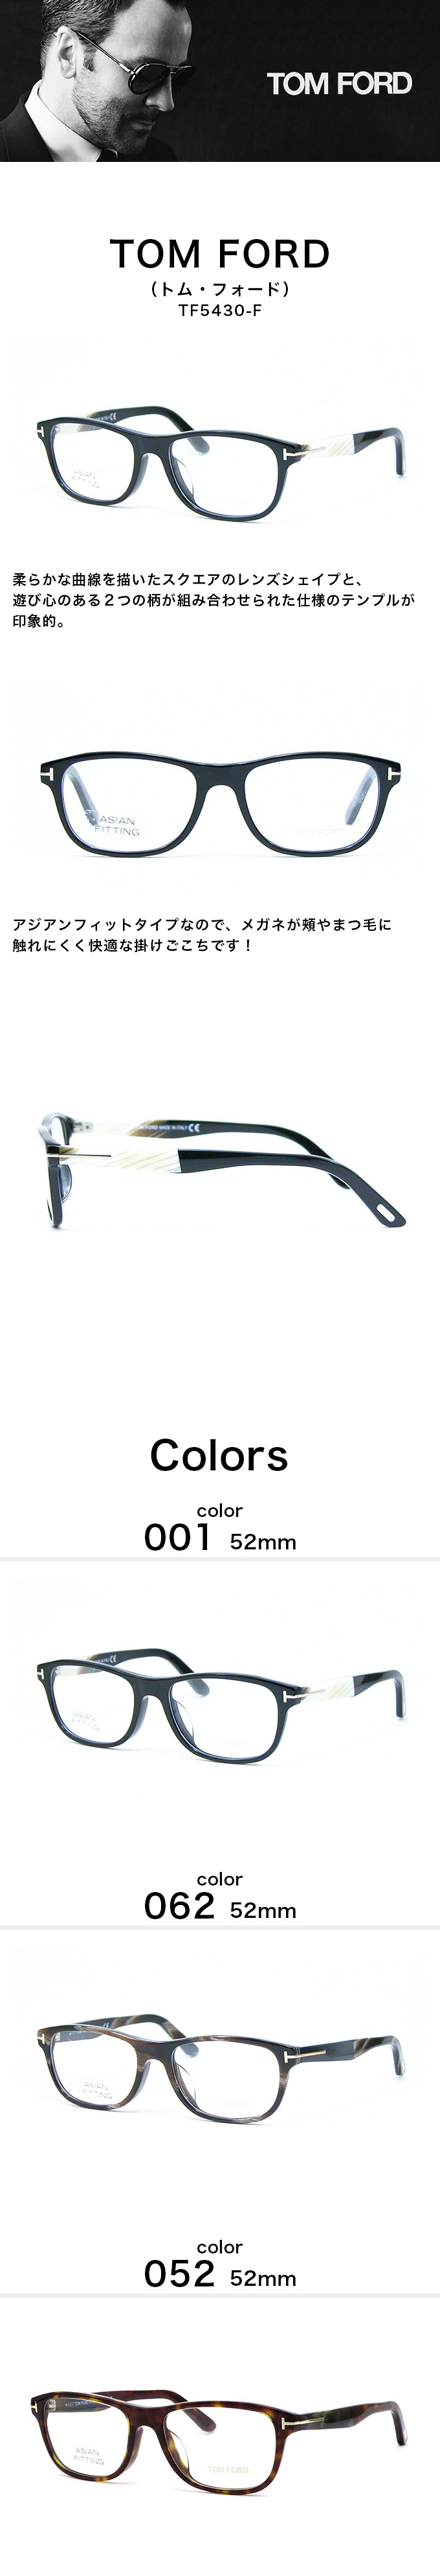 メガネ サングラス 眼鏡 TOM FORD トムフォード TF5430-F 54mm 3カラー 